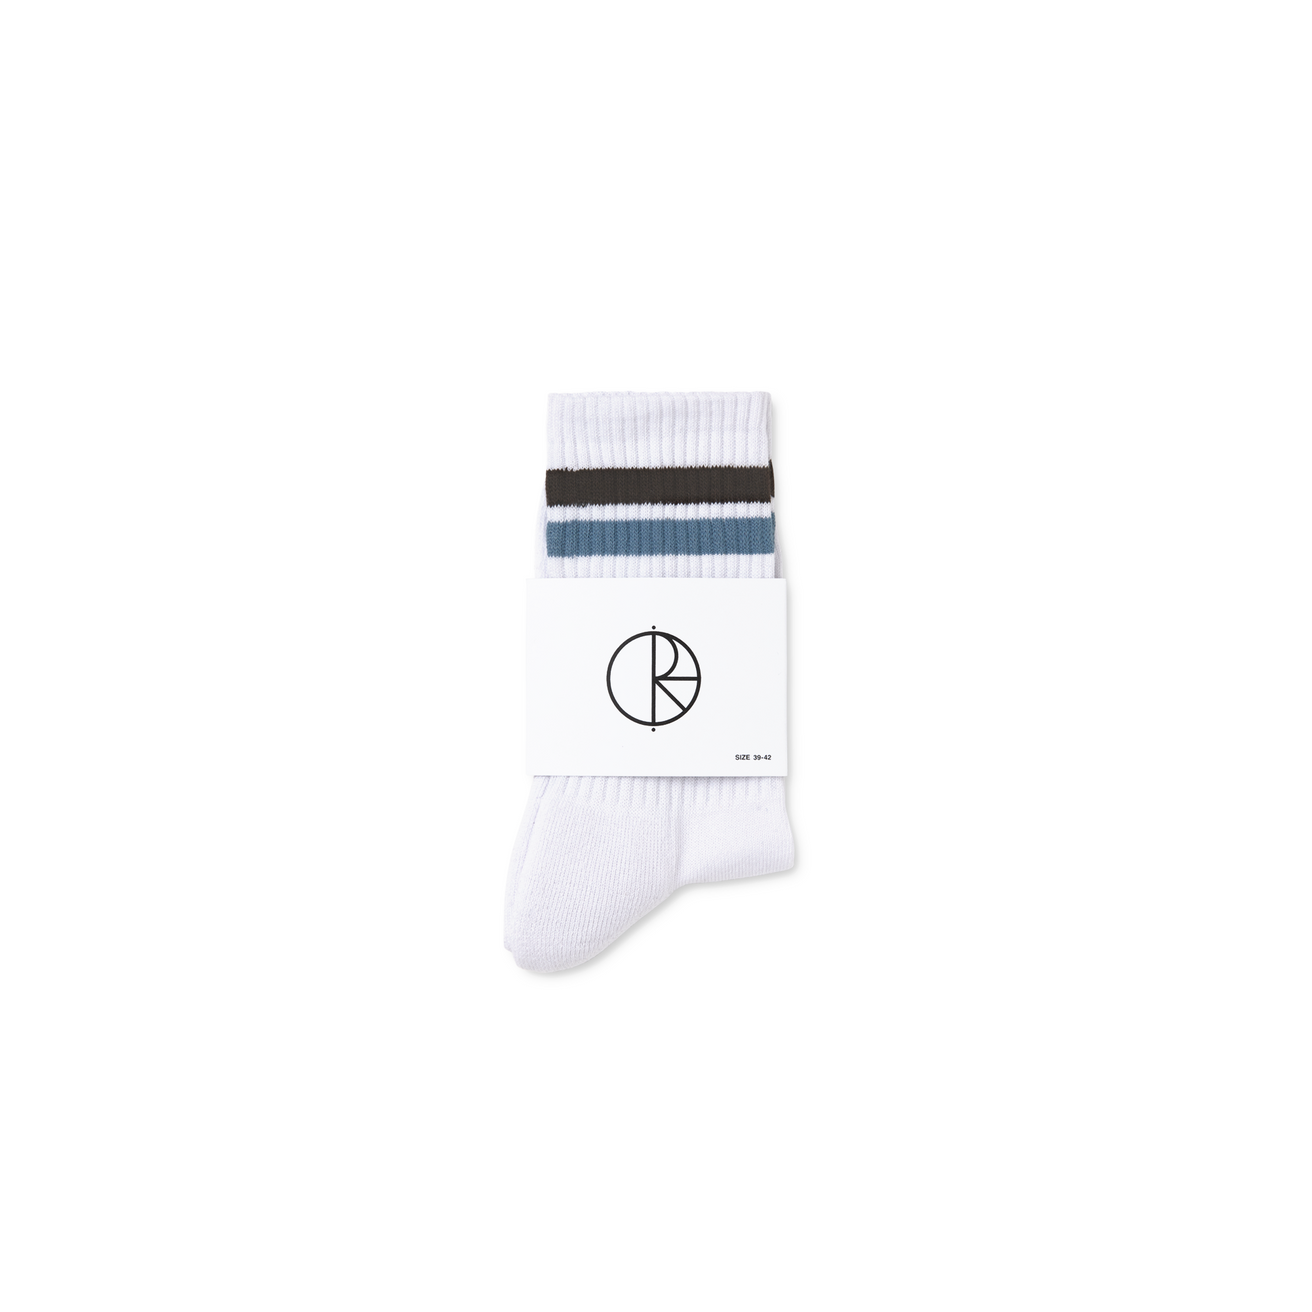 Polar Skate Co. Stripe Socks (White/Brown/Blue) - Apple Valley Emporium